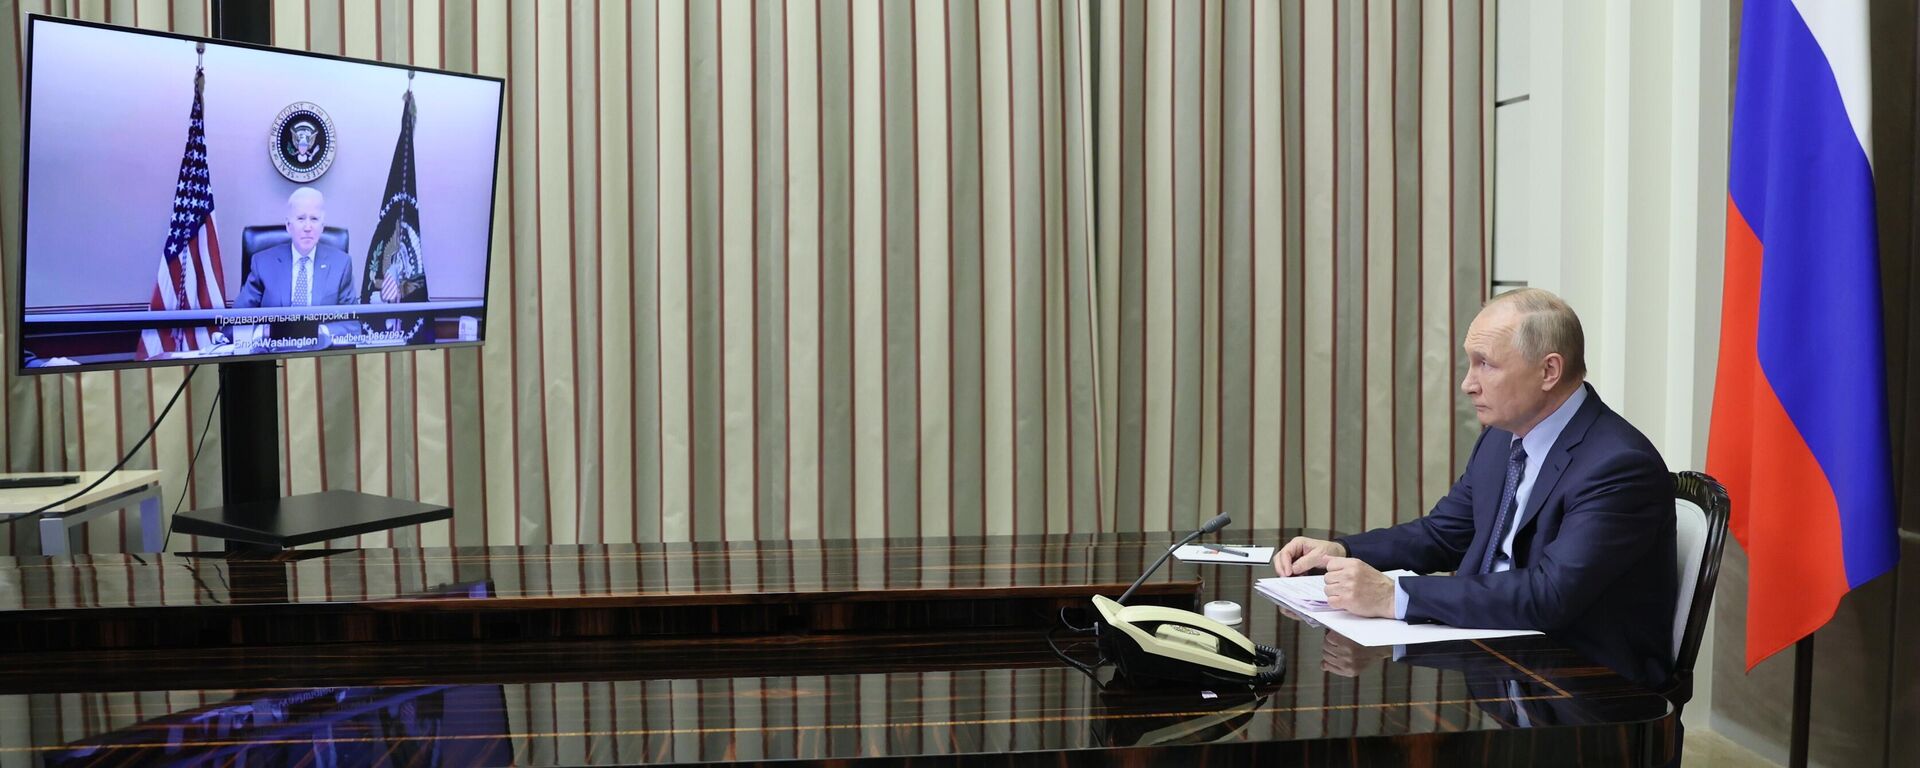 Президент РФ Владимир Путин во время переговоров с президентом США Джозефом Байденом в режиме видеоконференции - Sputnik Латвия, 1920, 07.12.2021